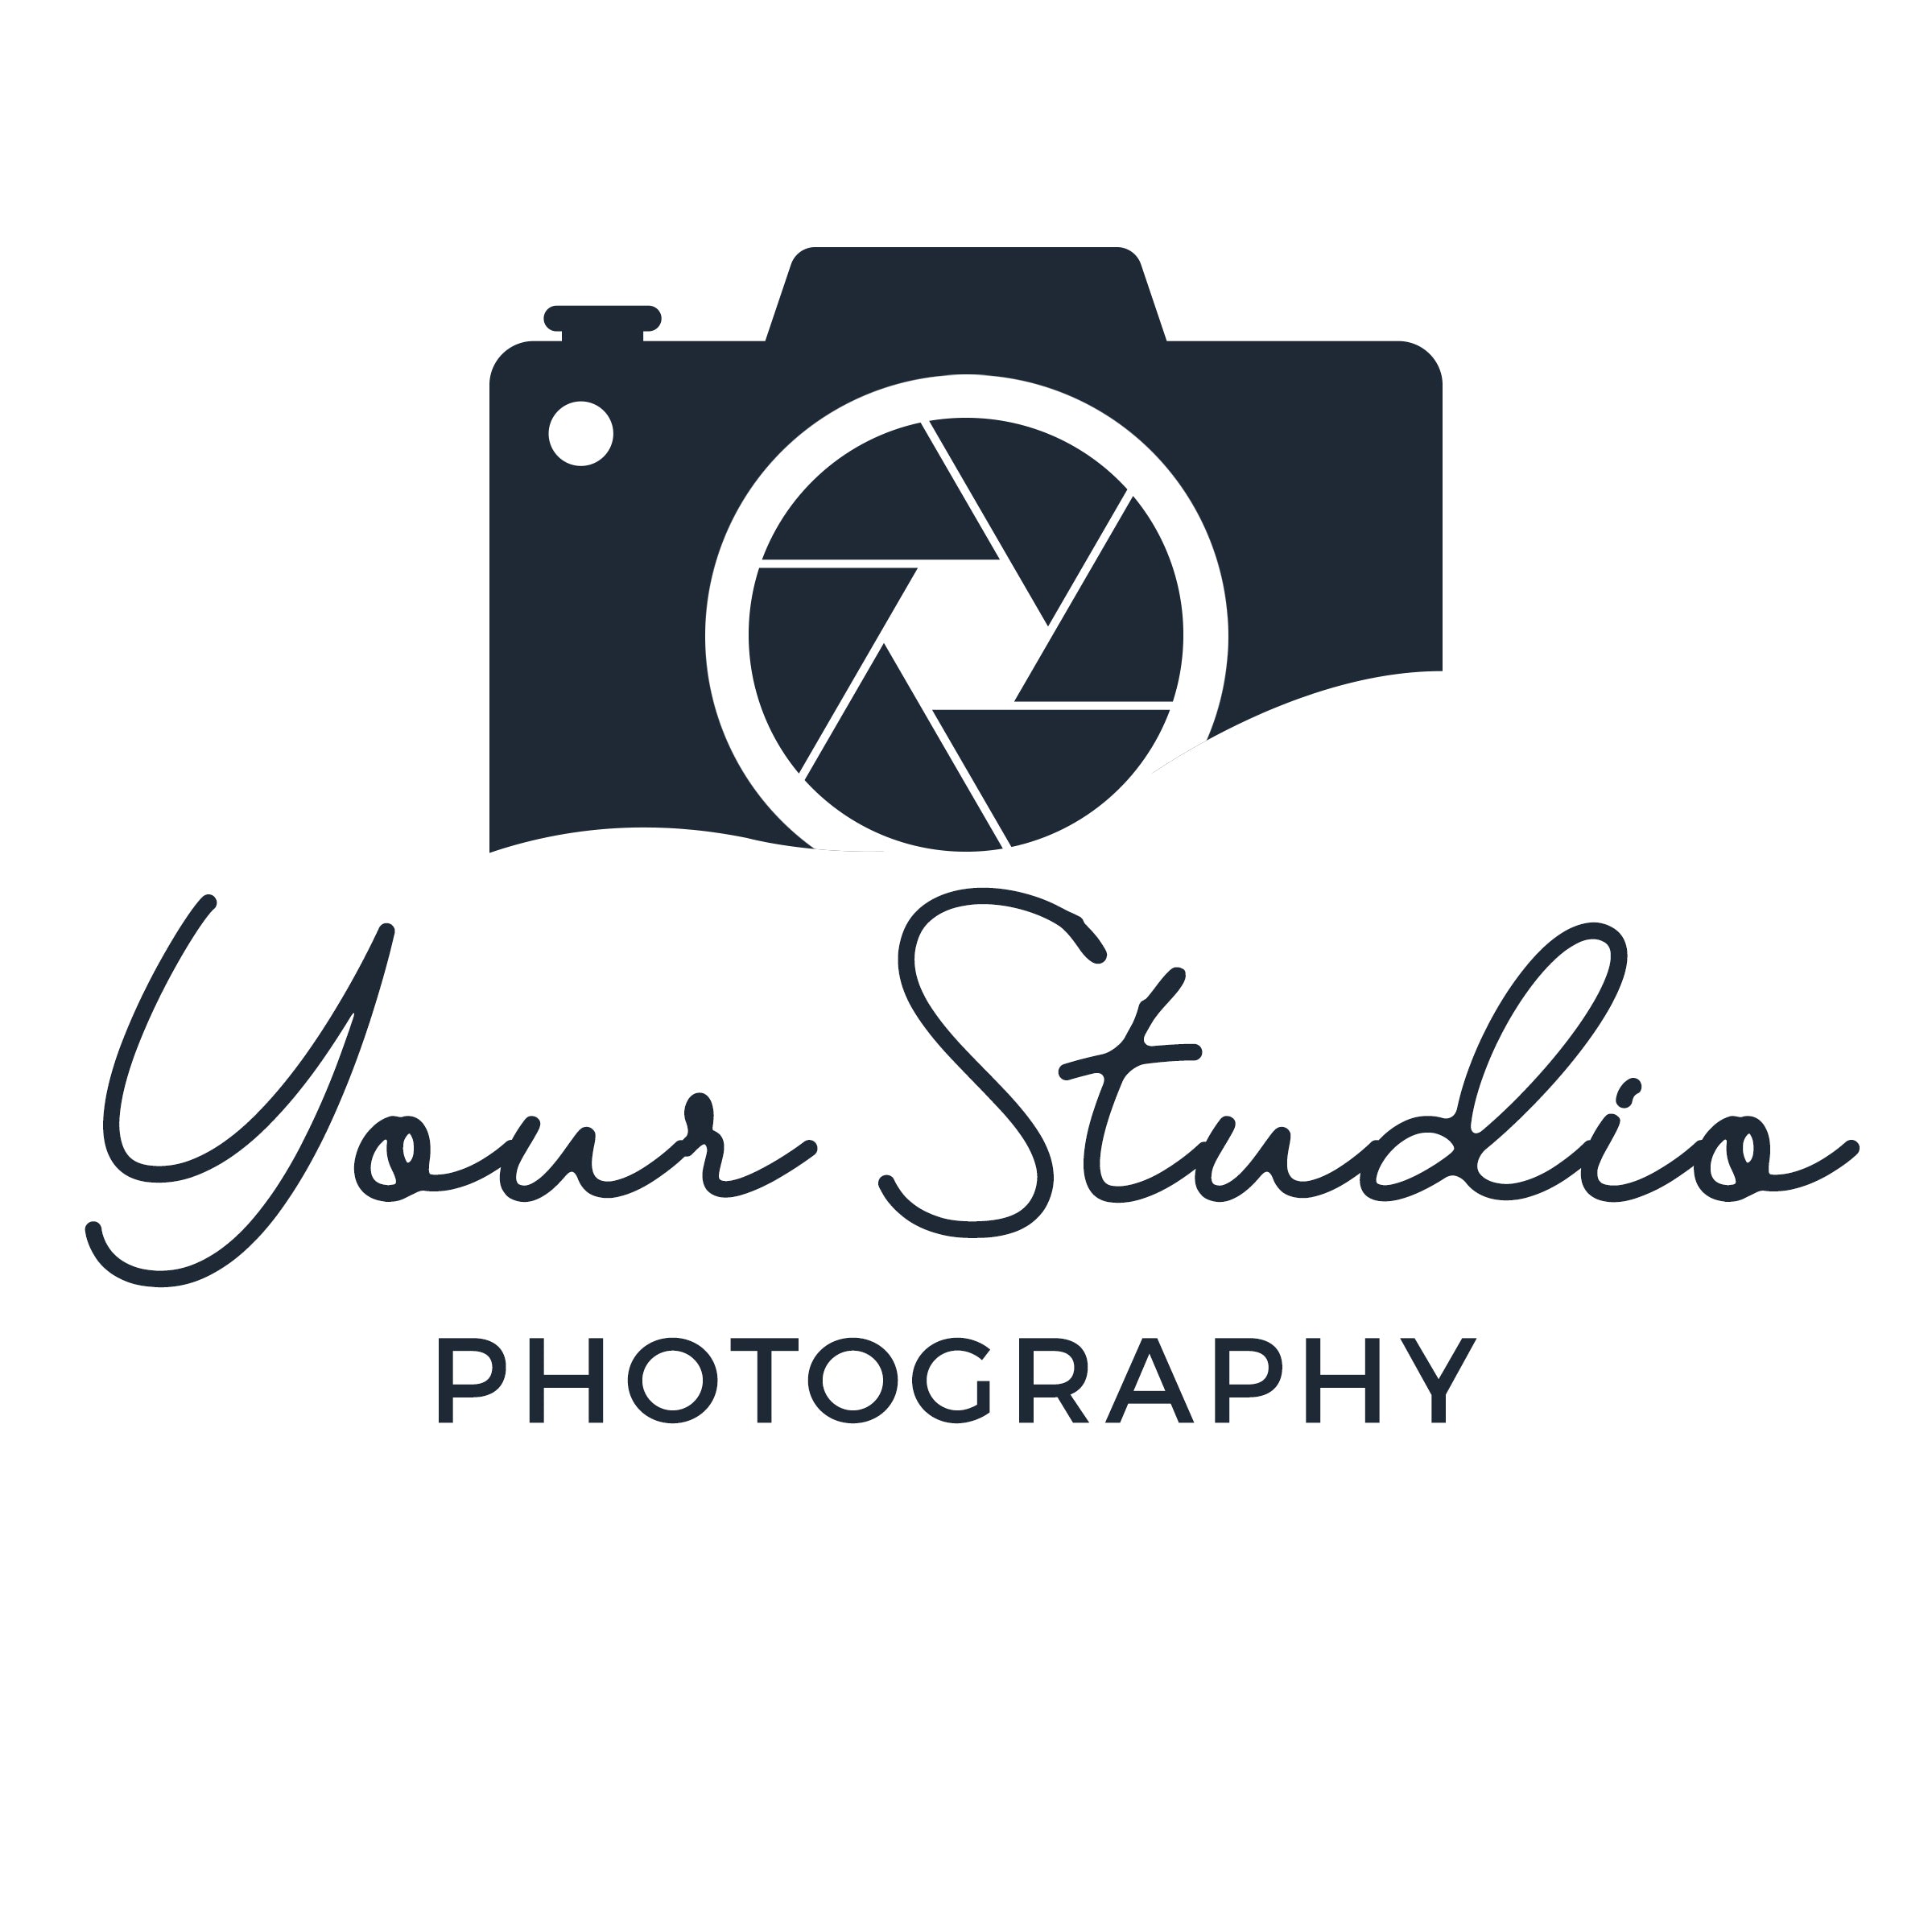 Camera Company Logos